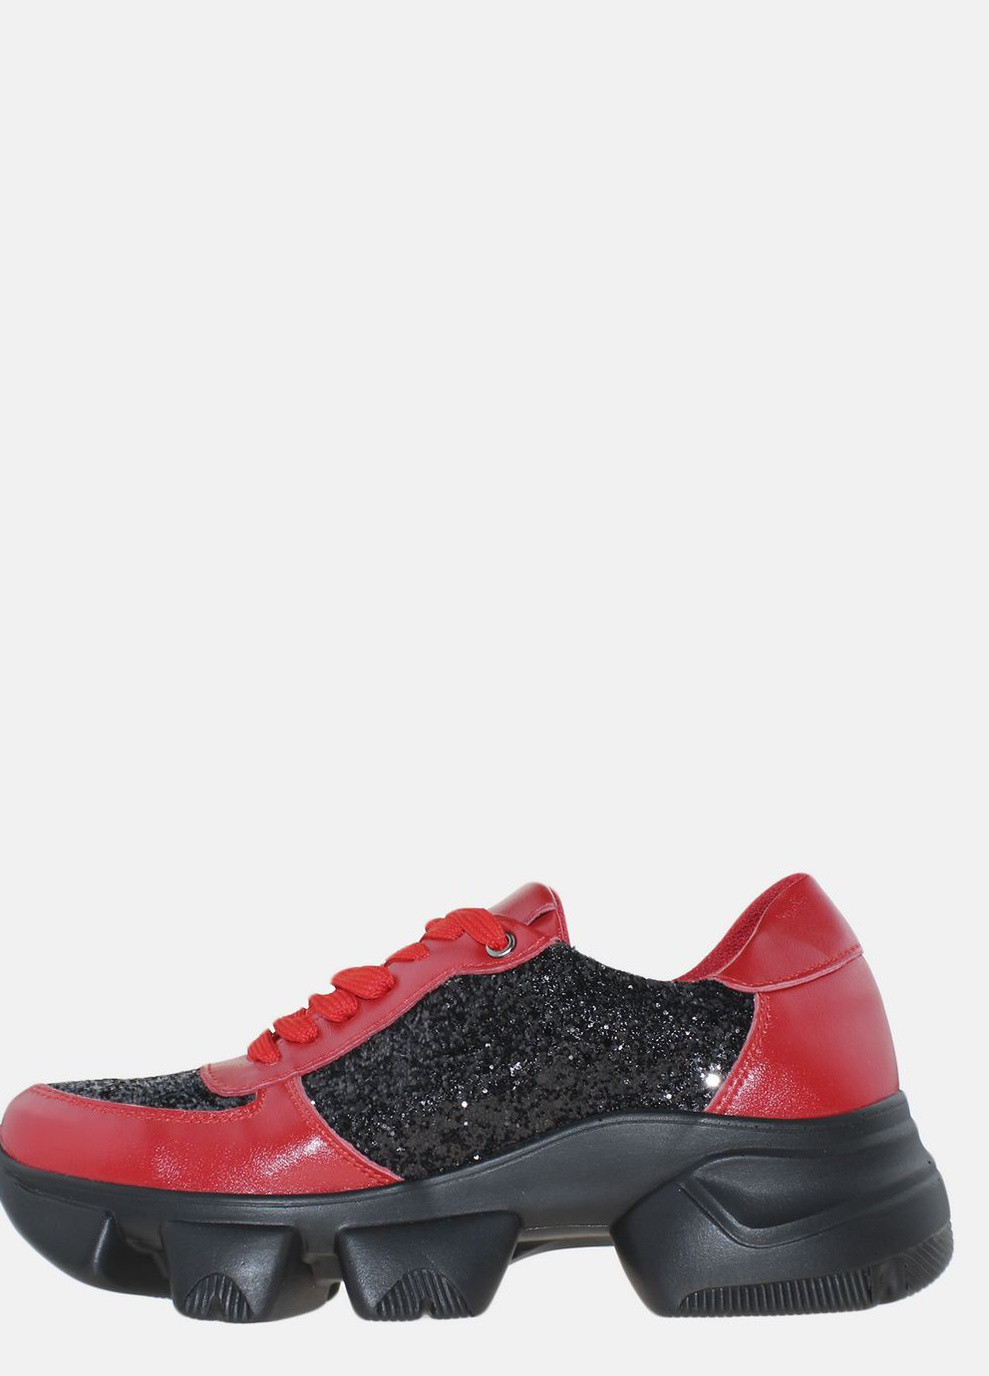 Червоні осінні кросівки r20-4568 червоний-чорний Fabiani